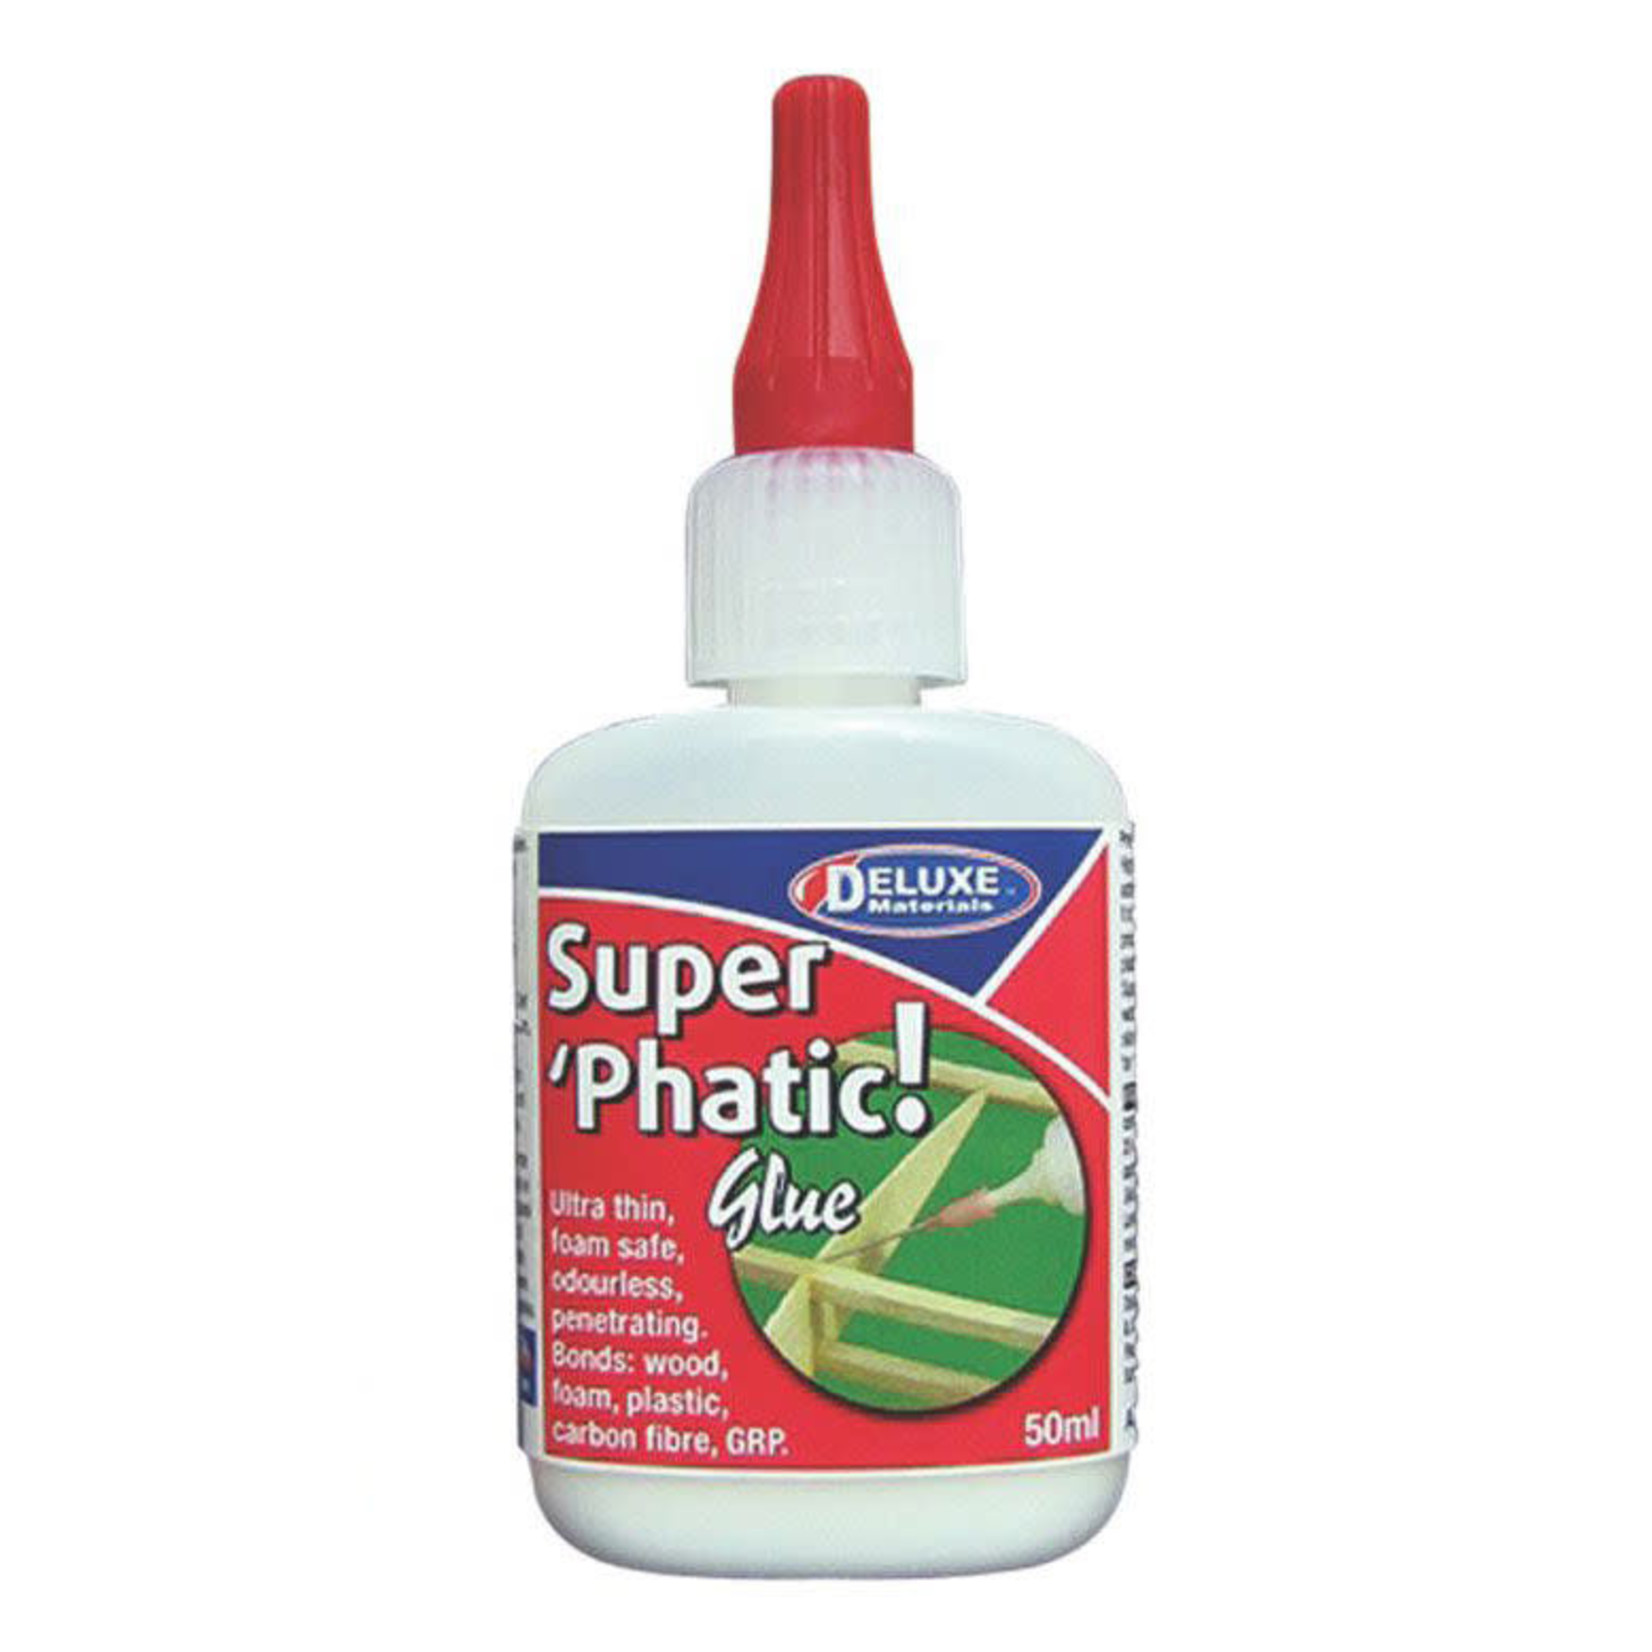 Deluxe Materials Super 'Phatic' Glue